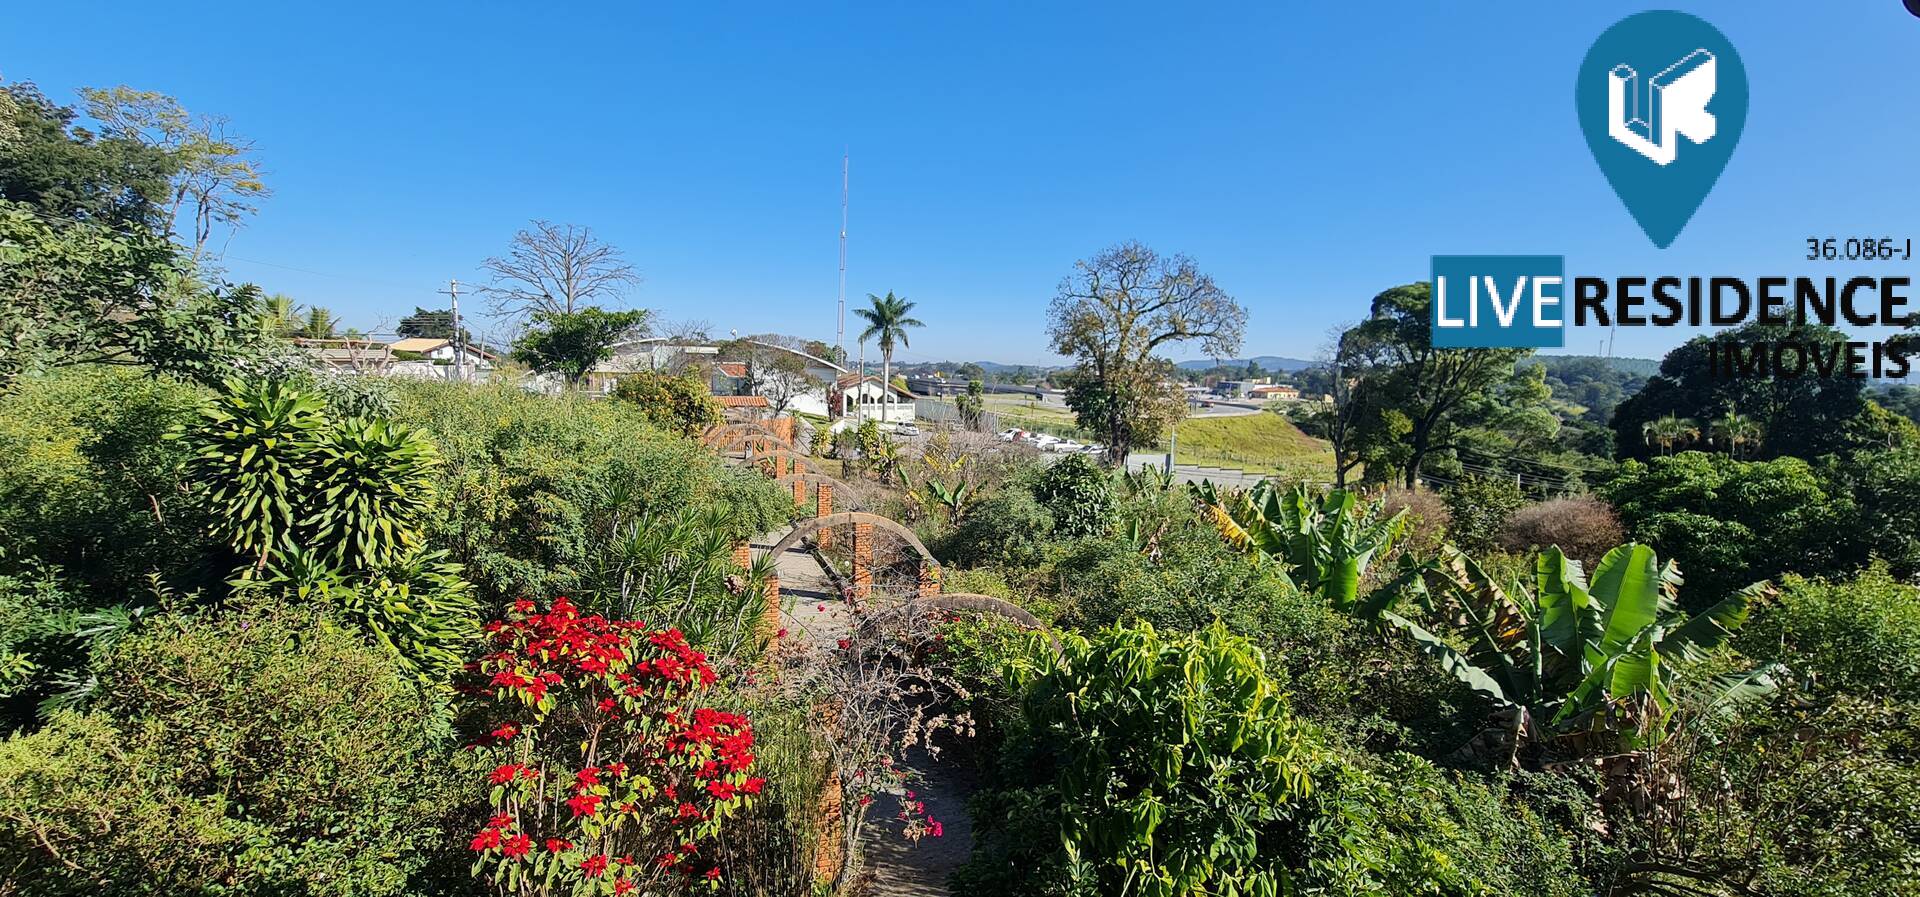 Parque da Fazenda terreno 1.662m² vende Itatiba SP Live Residence